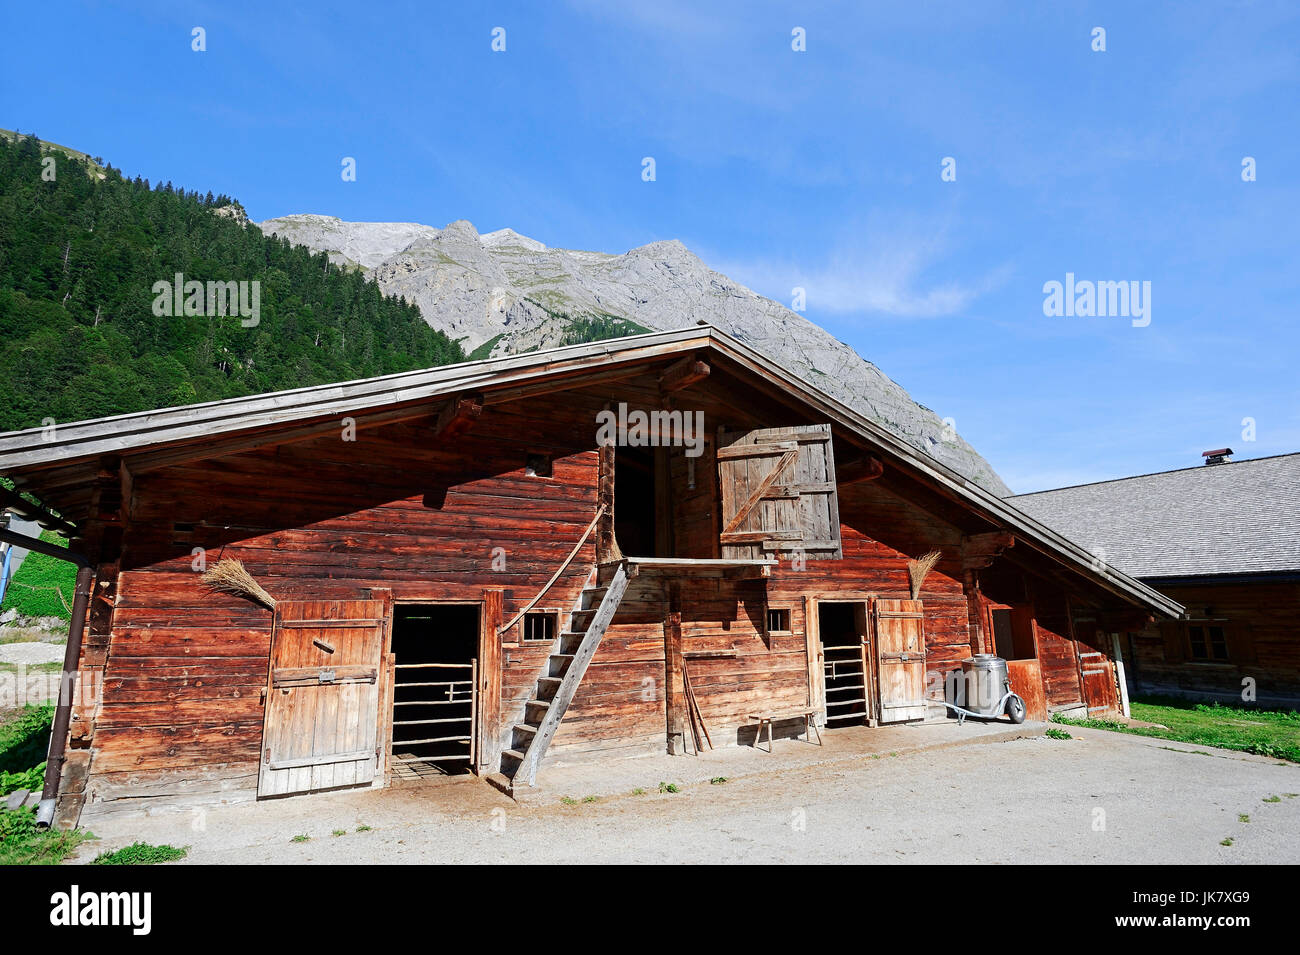 Alpine hut, Grosser Ahornboden, Karwendel park, Eng valley, Tyrol, Austria Stock Photo